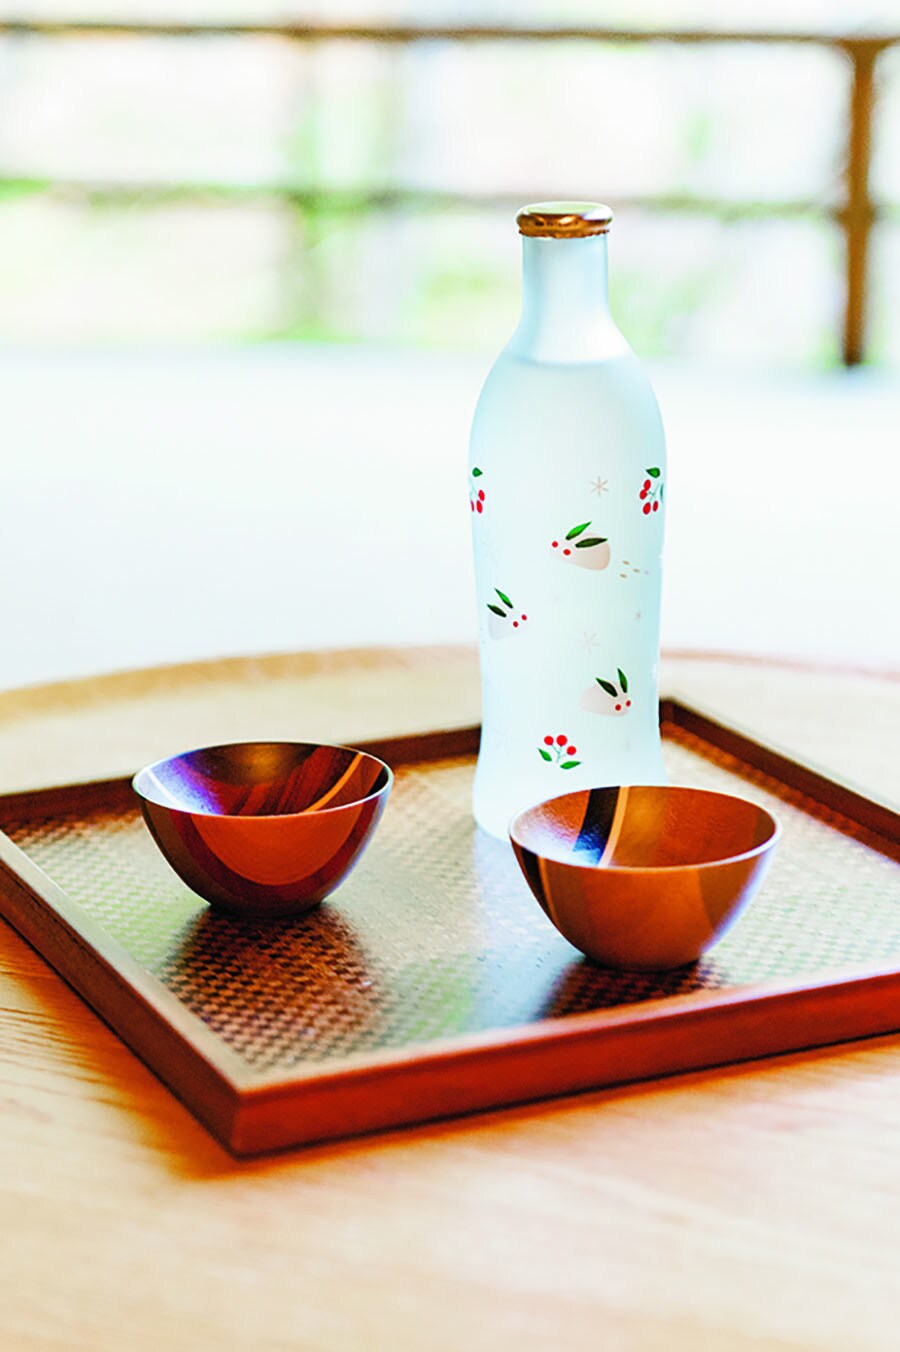 【星野リゾート 界 箱根】寄木細工の酒器で味わう日本酒は格別。Photo: Wataru Sato